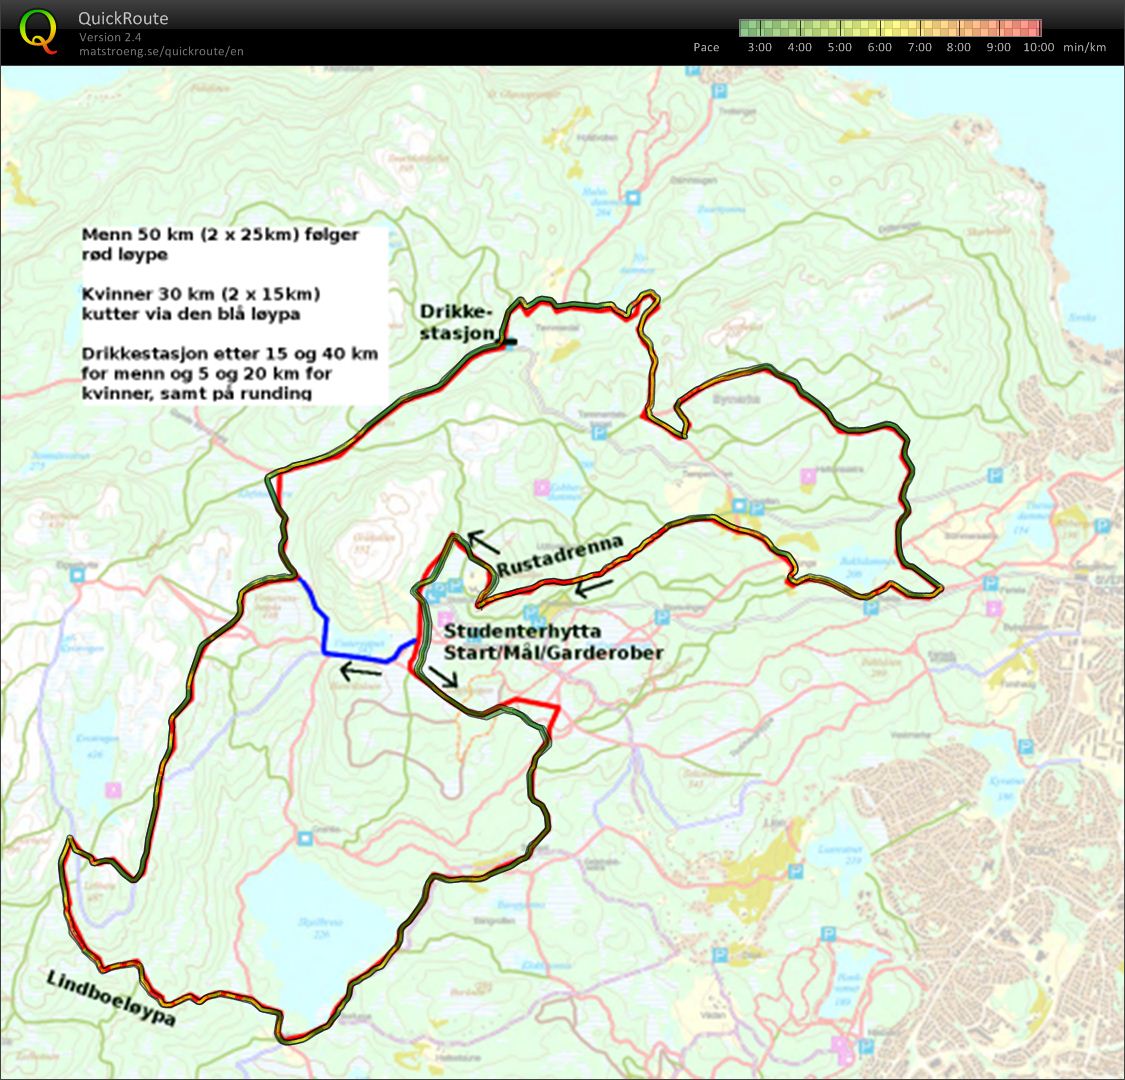 SL 50 km klassisk enkeltstart (23.02.2013)